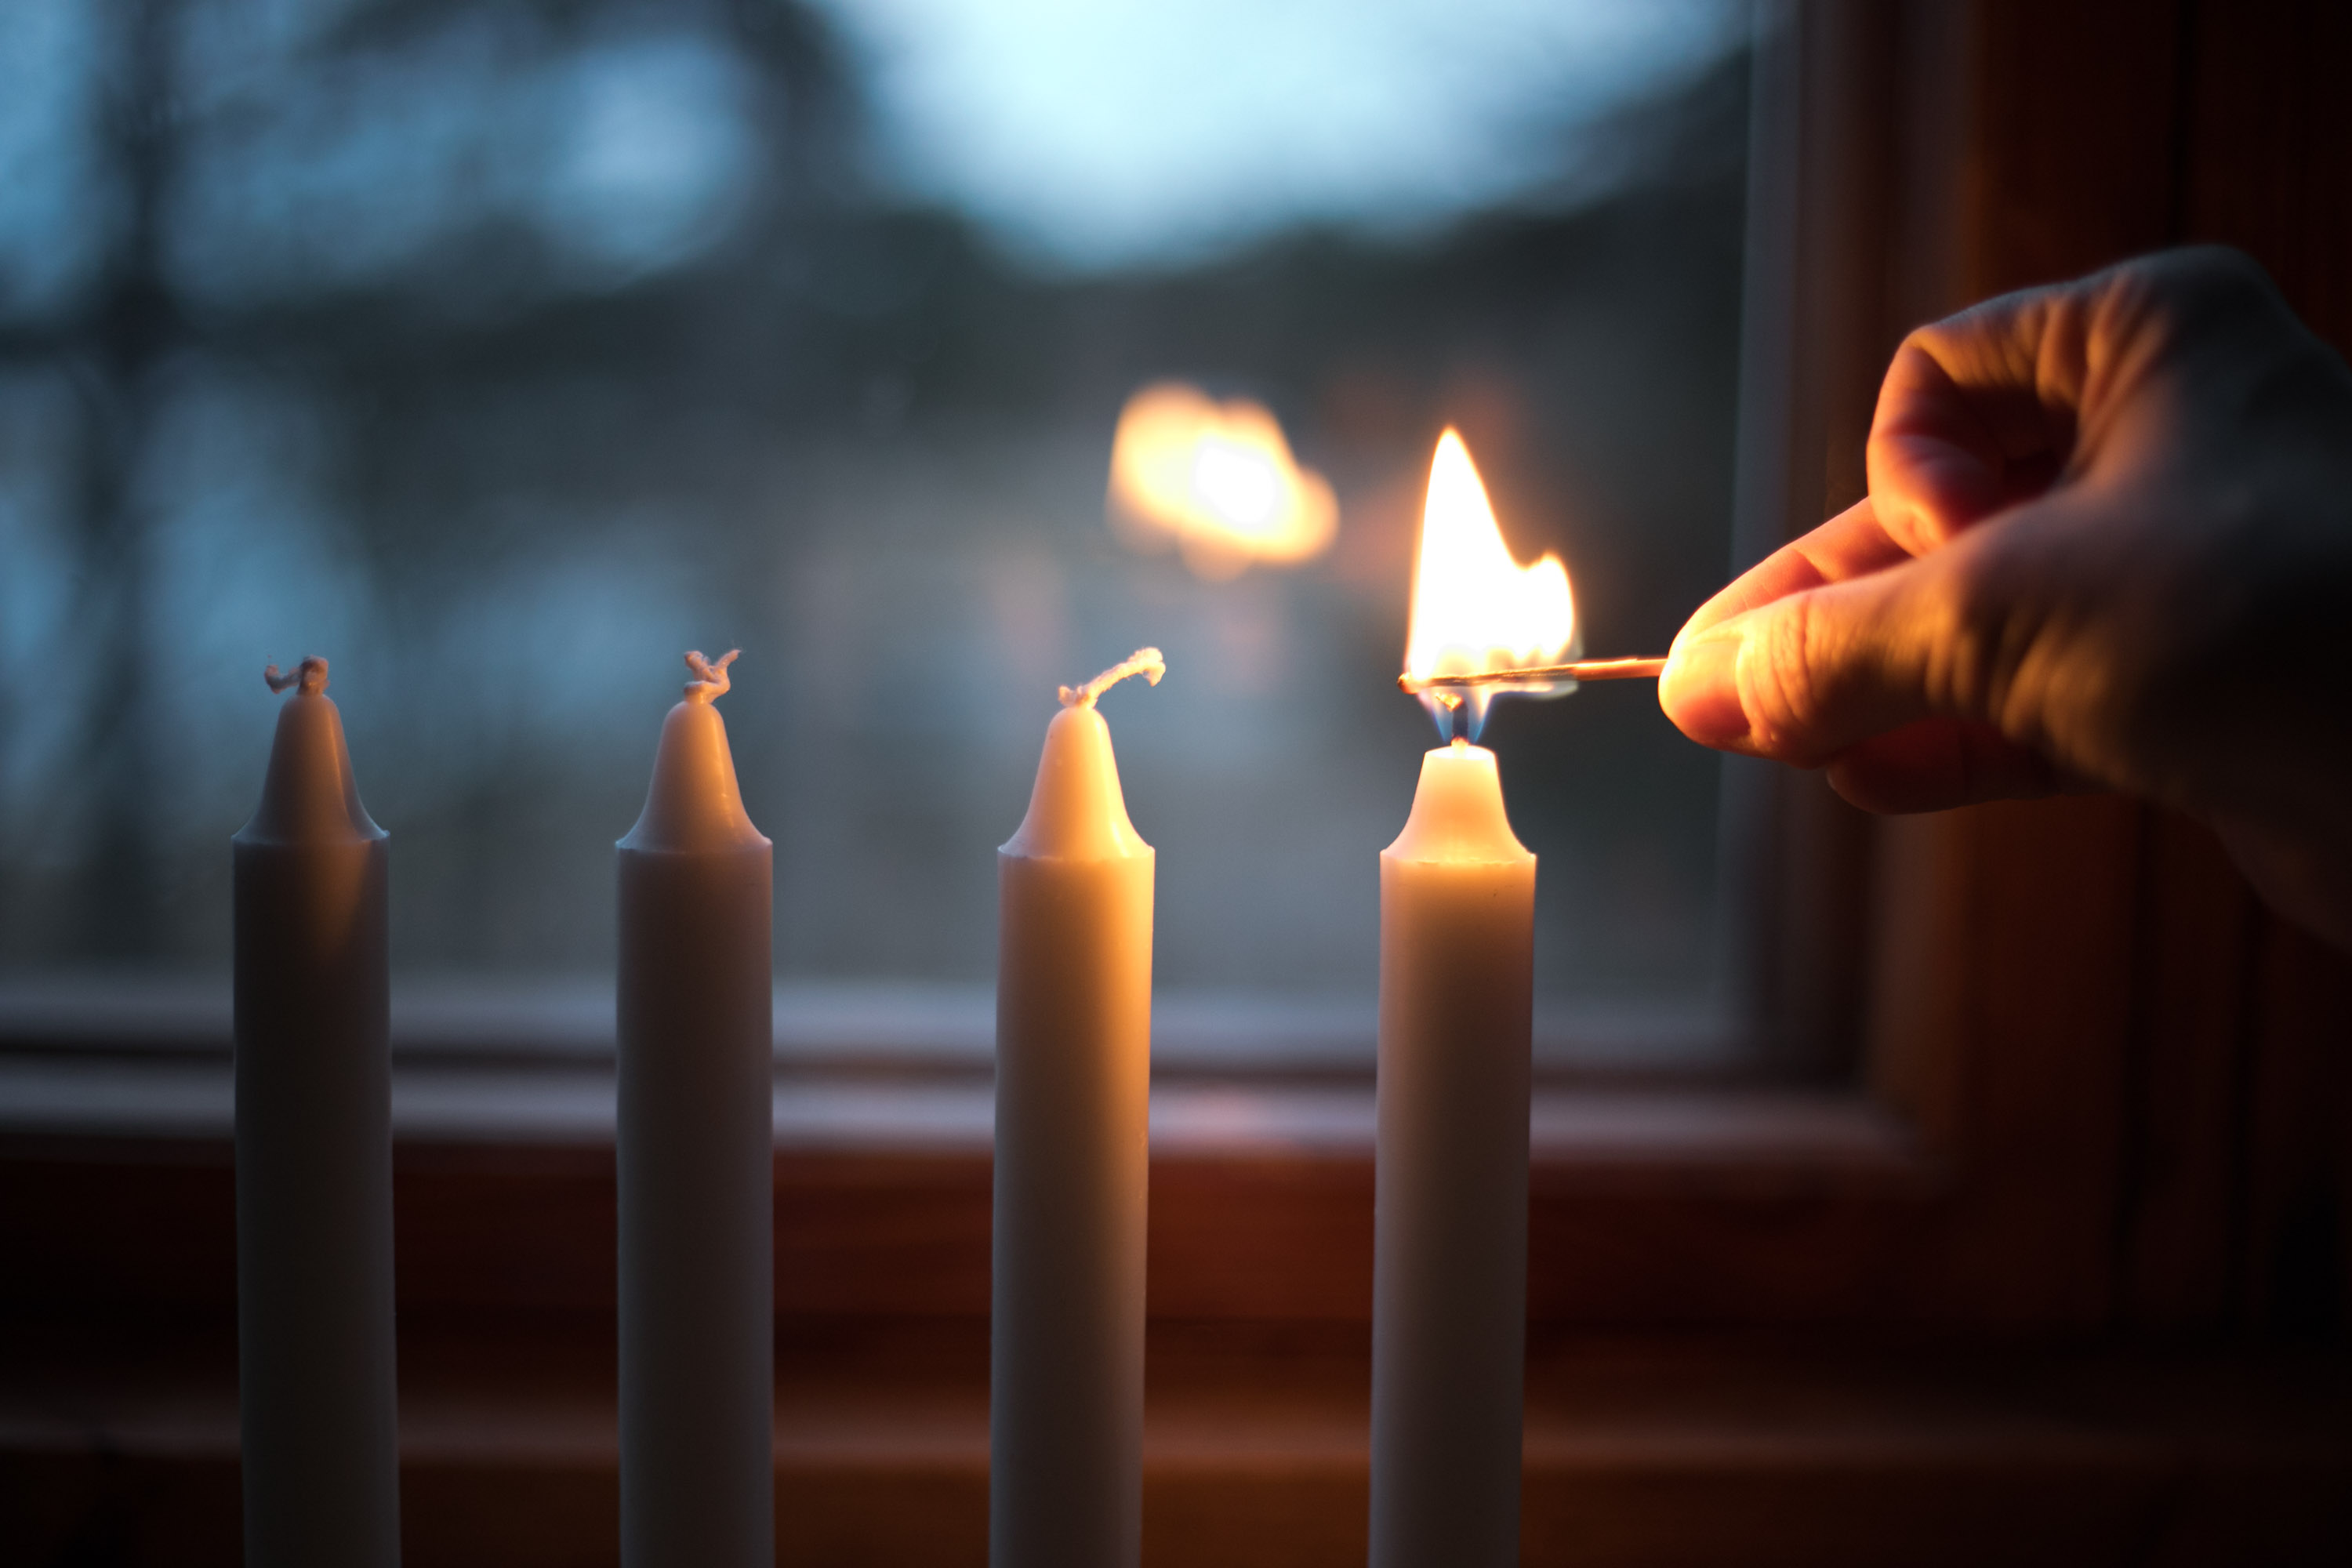 Neljästä adventtikynttilästä sytytetään ensimmäinen kynttilä.